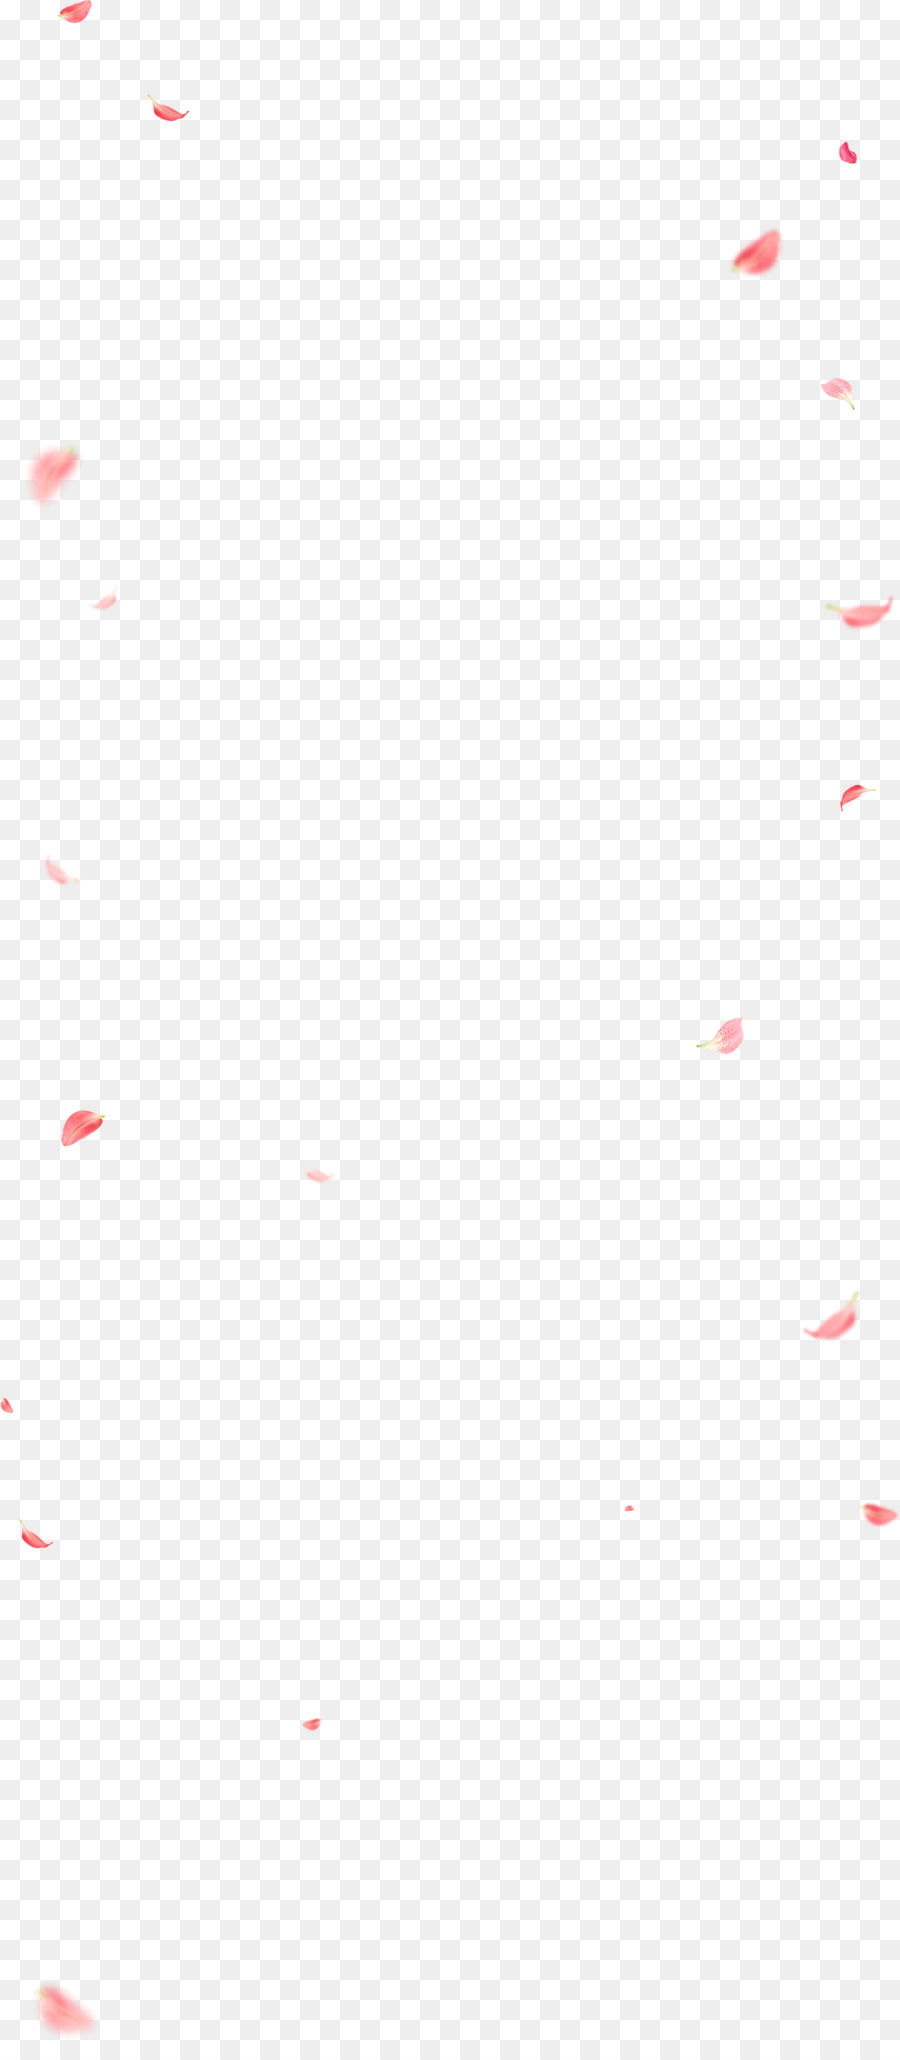 Angolo Di Punto Di Sfondo Per Il Desktop Del Carattere Del Pattern - babushka bandiera